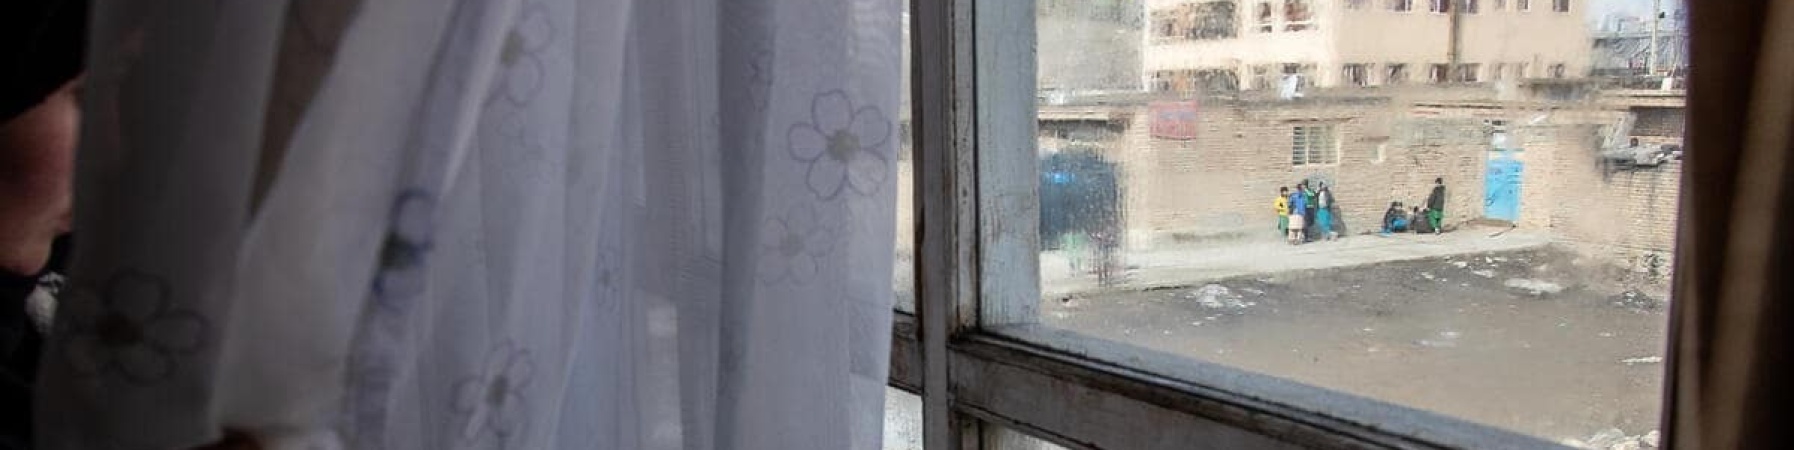 donna afghana ch guarda al di fuori della finestra 